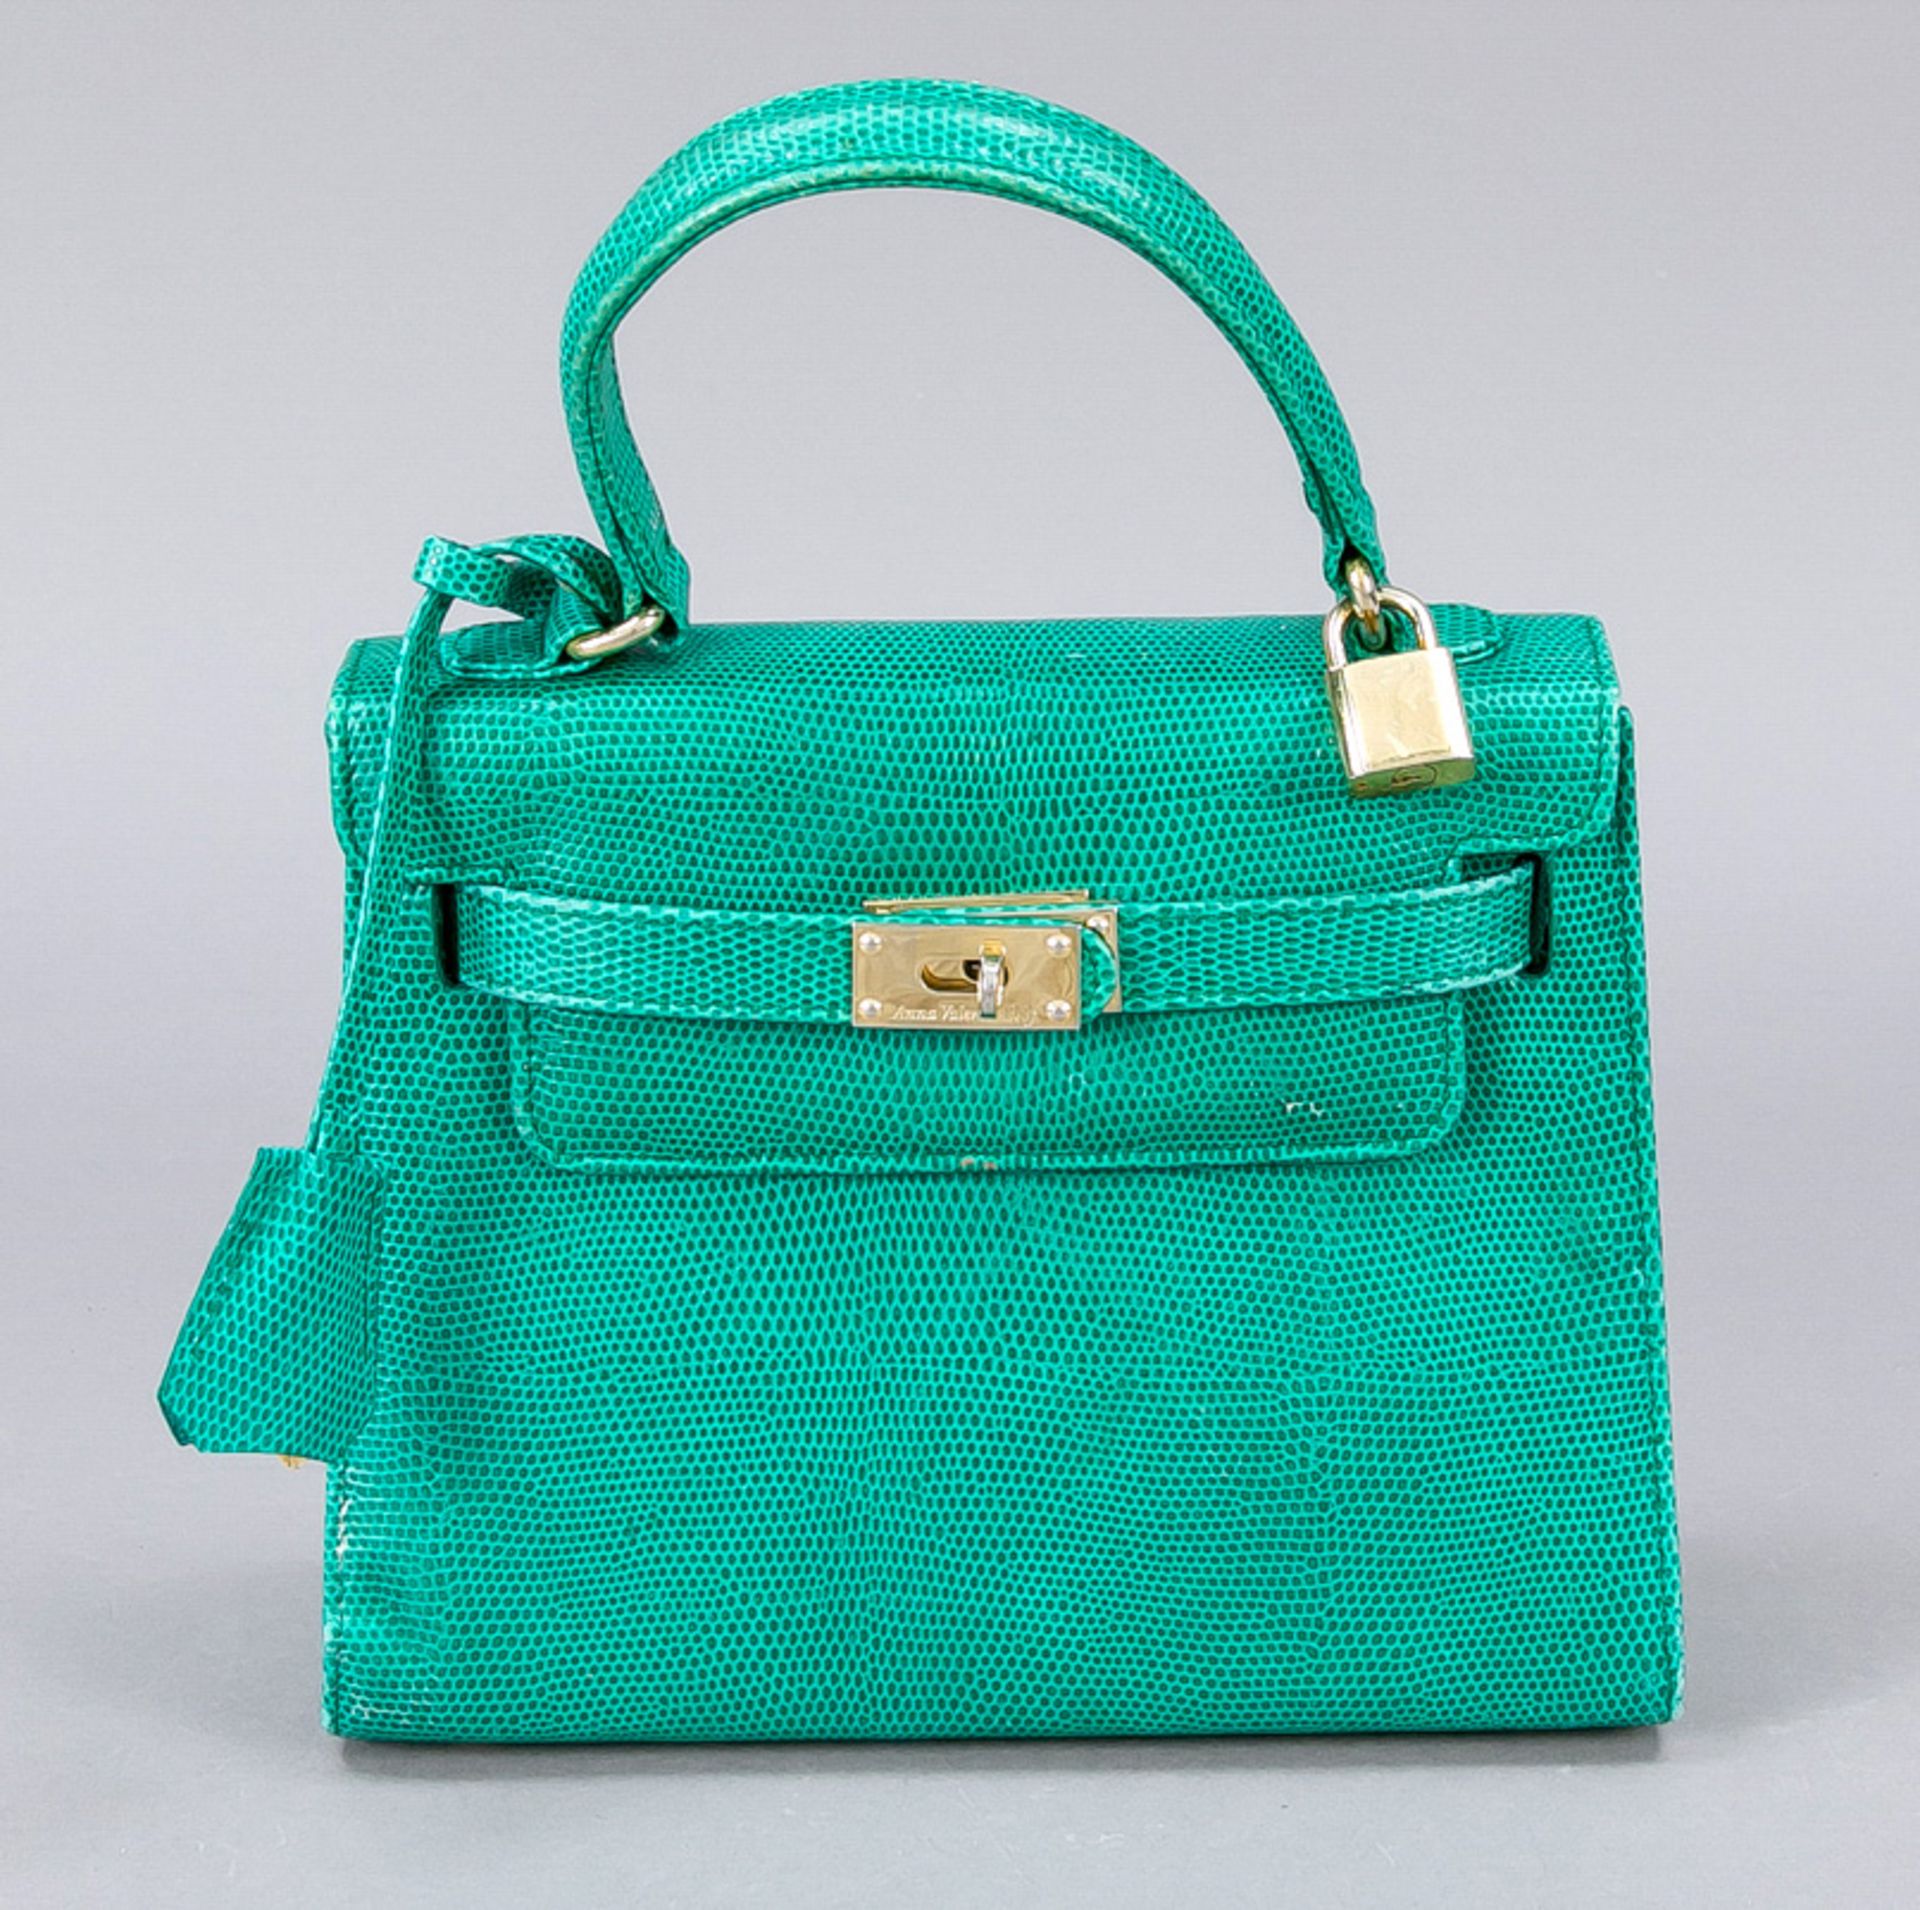 Anna Valerie Adolf, kleine Handtasche im klassischen Kelly Bag Design, smaragdgrünes Leder in